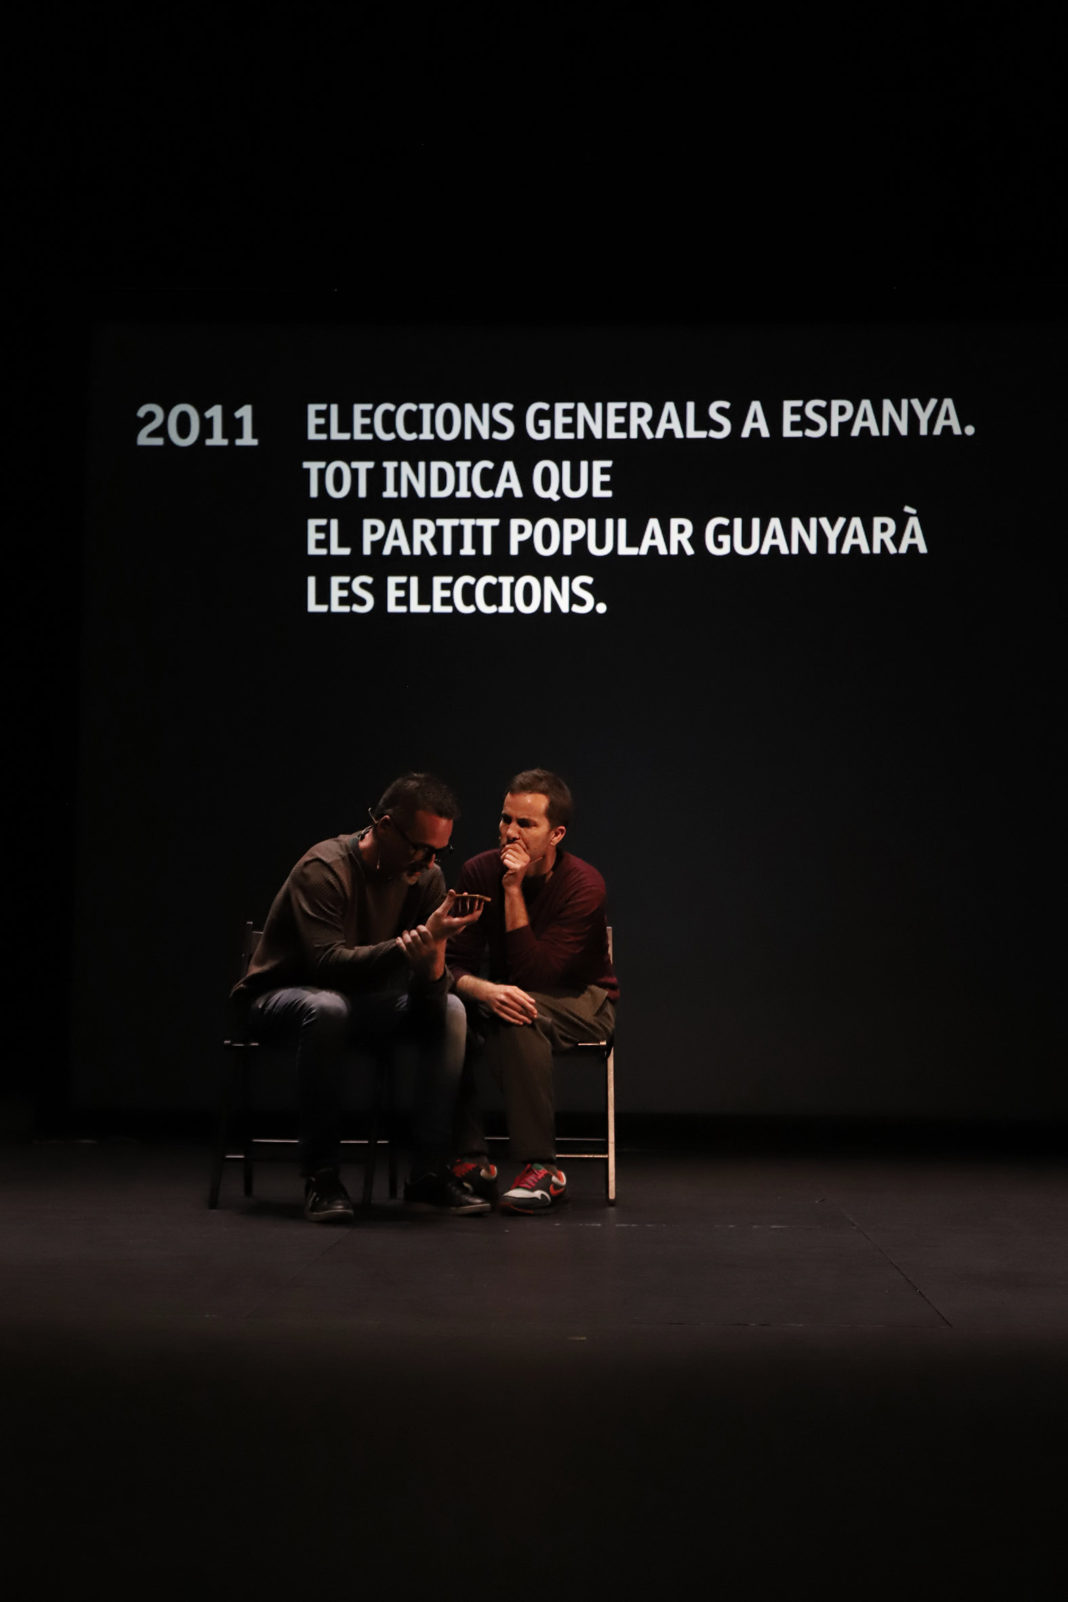 El Institut Valencià de Cultura presenta 'La sort' en el Teatre Rialto